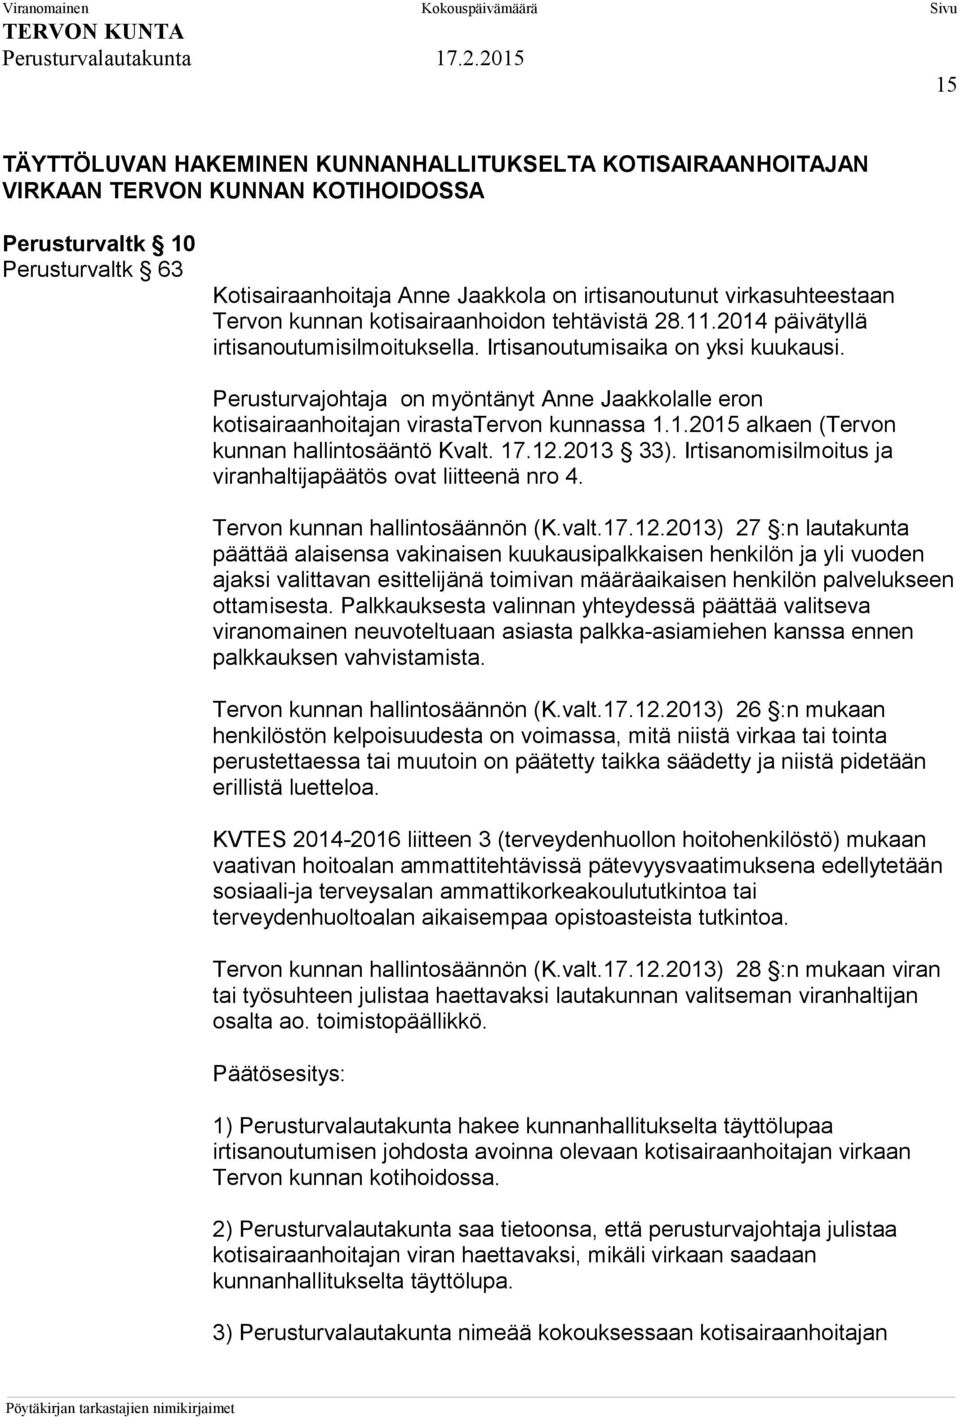 Perusturvajohtaja on myöntänyt Anne Jaakkolalle eron kotisairaanhoitajan virastatervon kunnassa 1.1.2015 alkaen (Tervon kunnan hallintosääntö Kvalt. 17.12.2013 33).